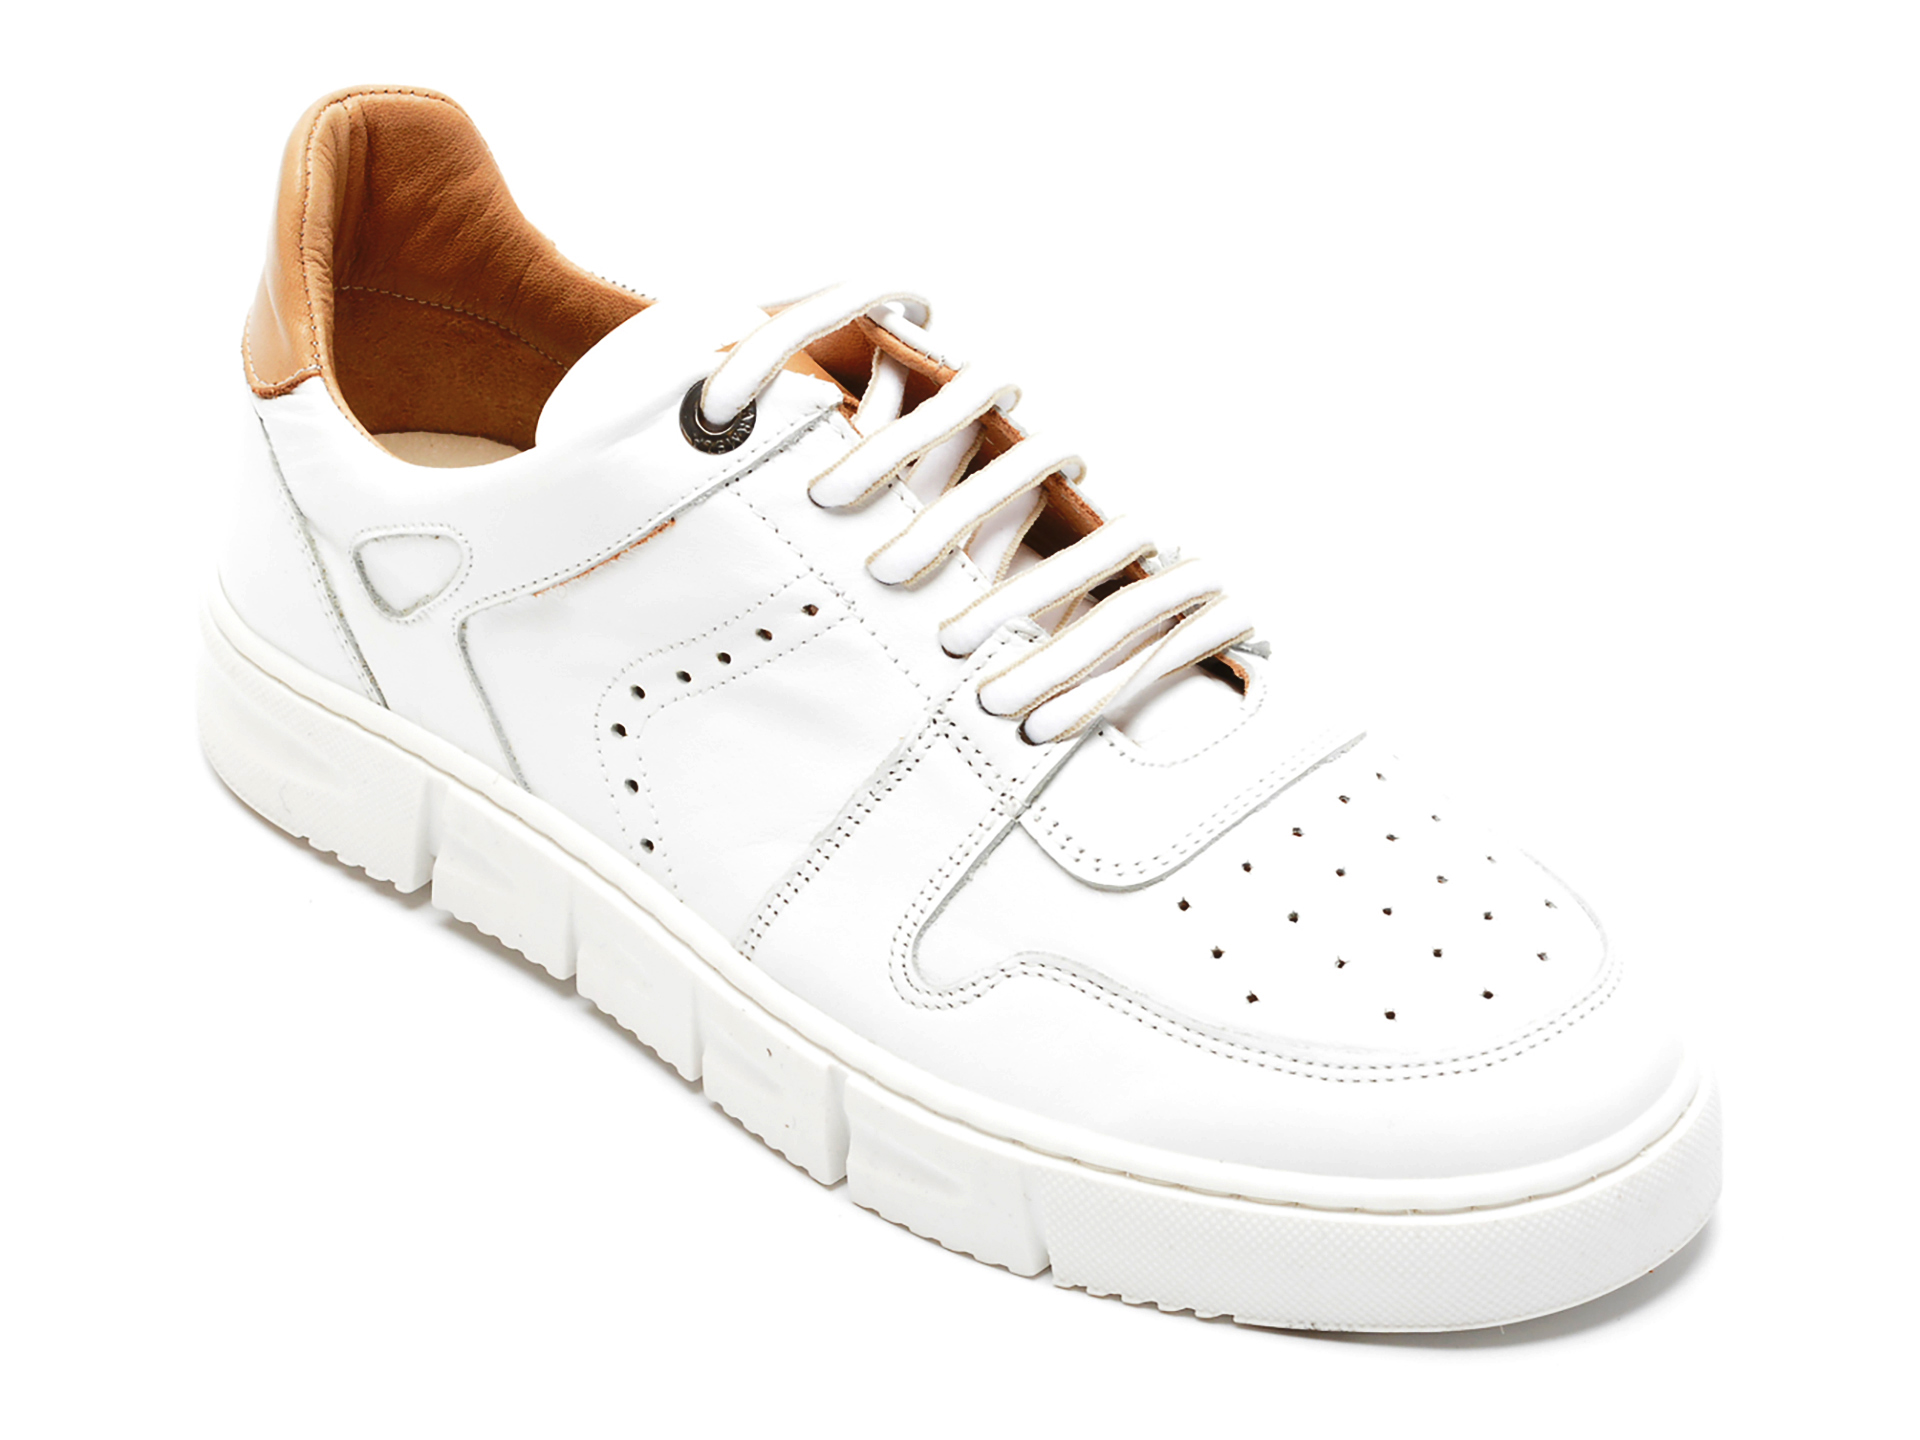 Pantofi BESTELLO albi, 150, din piele naturala BESTELLO